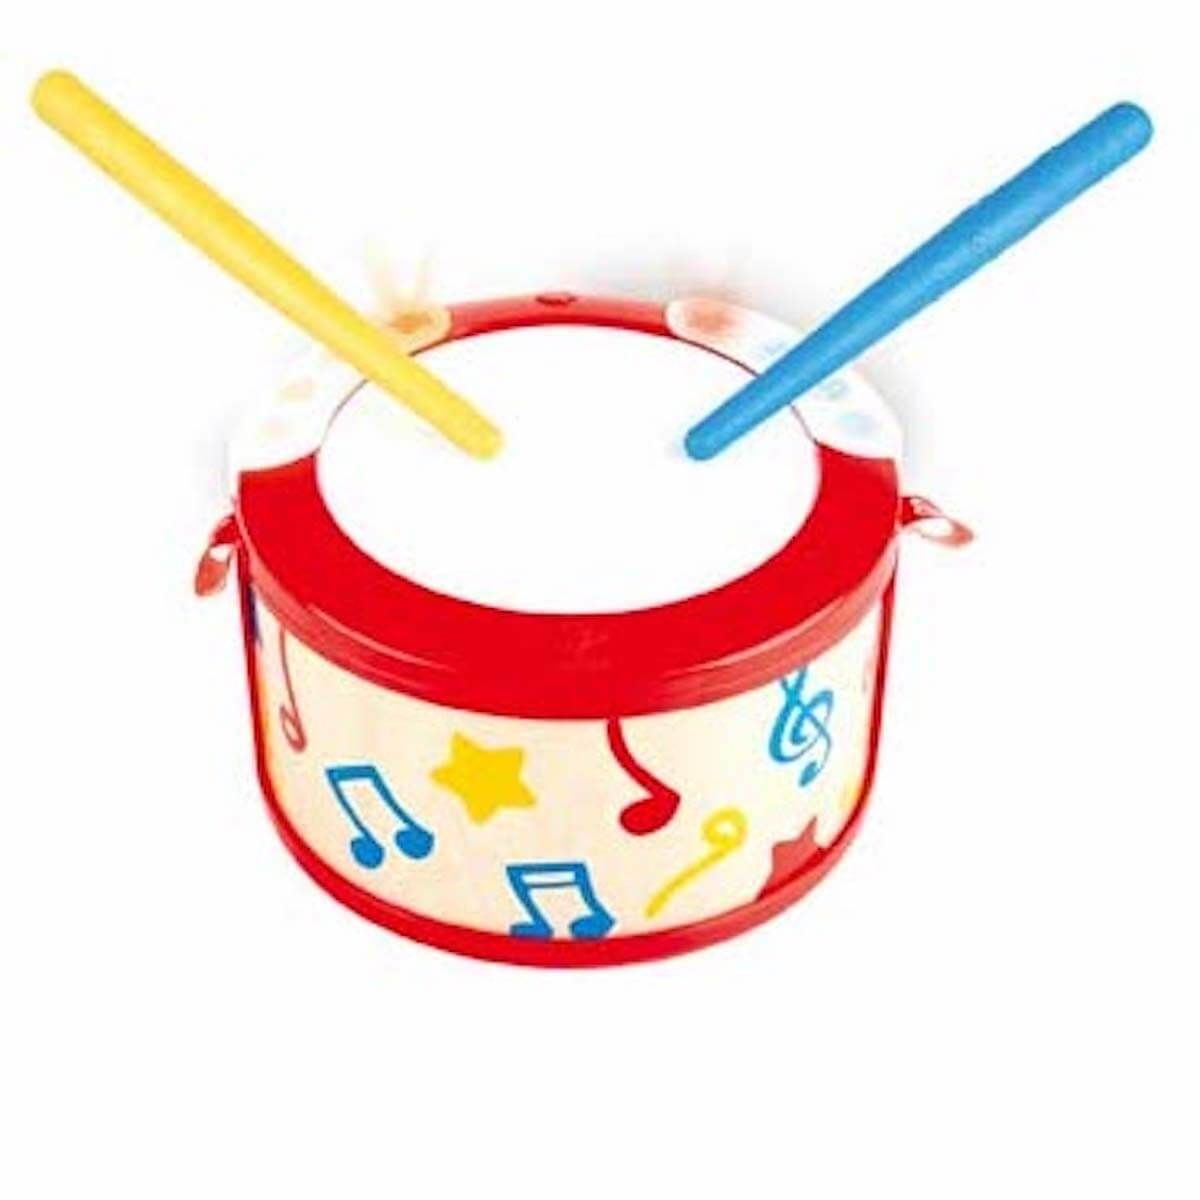 Hape E0333 Baby Drum tambour musical bébé interactif sons et